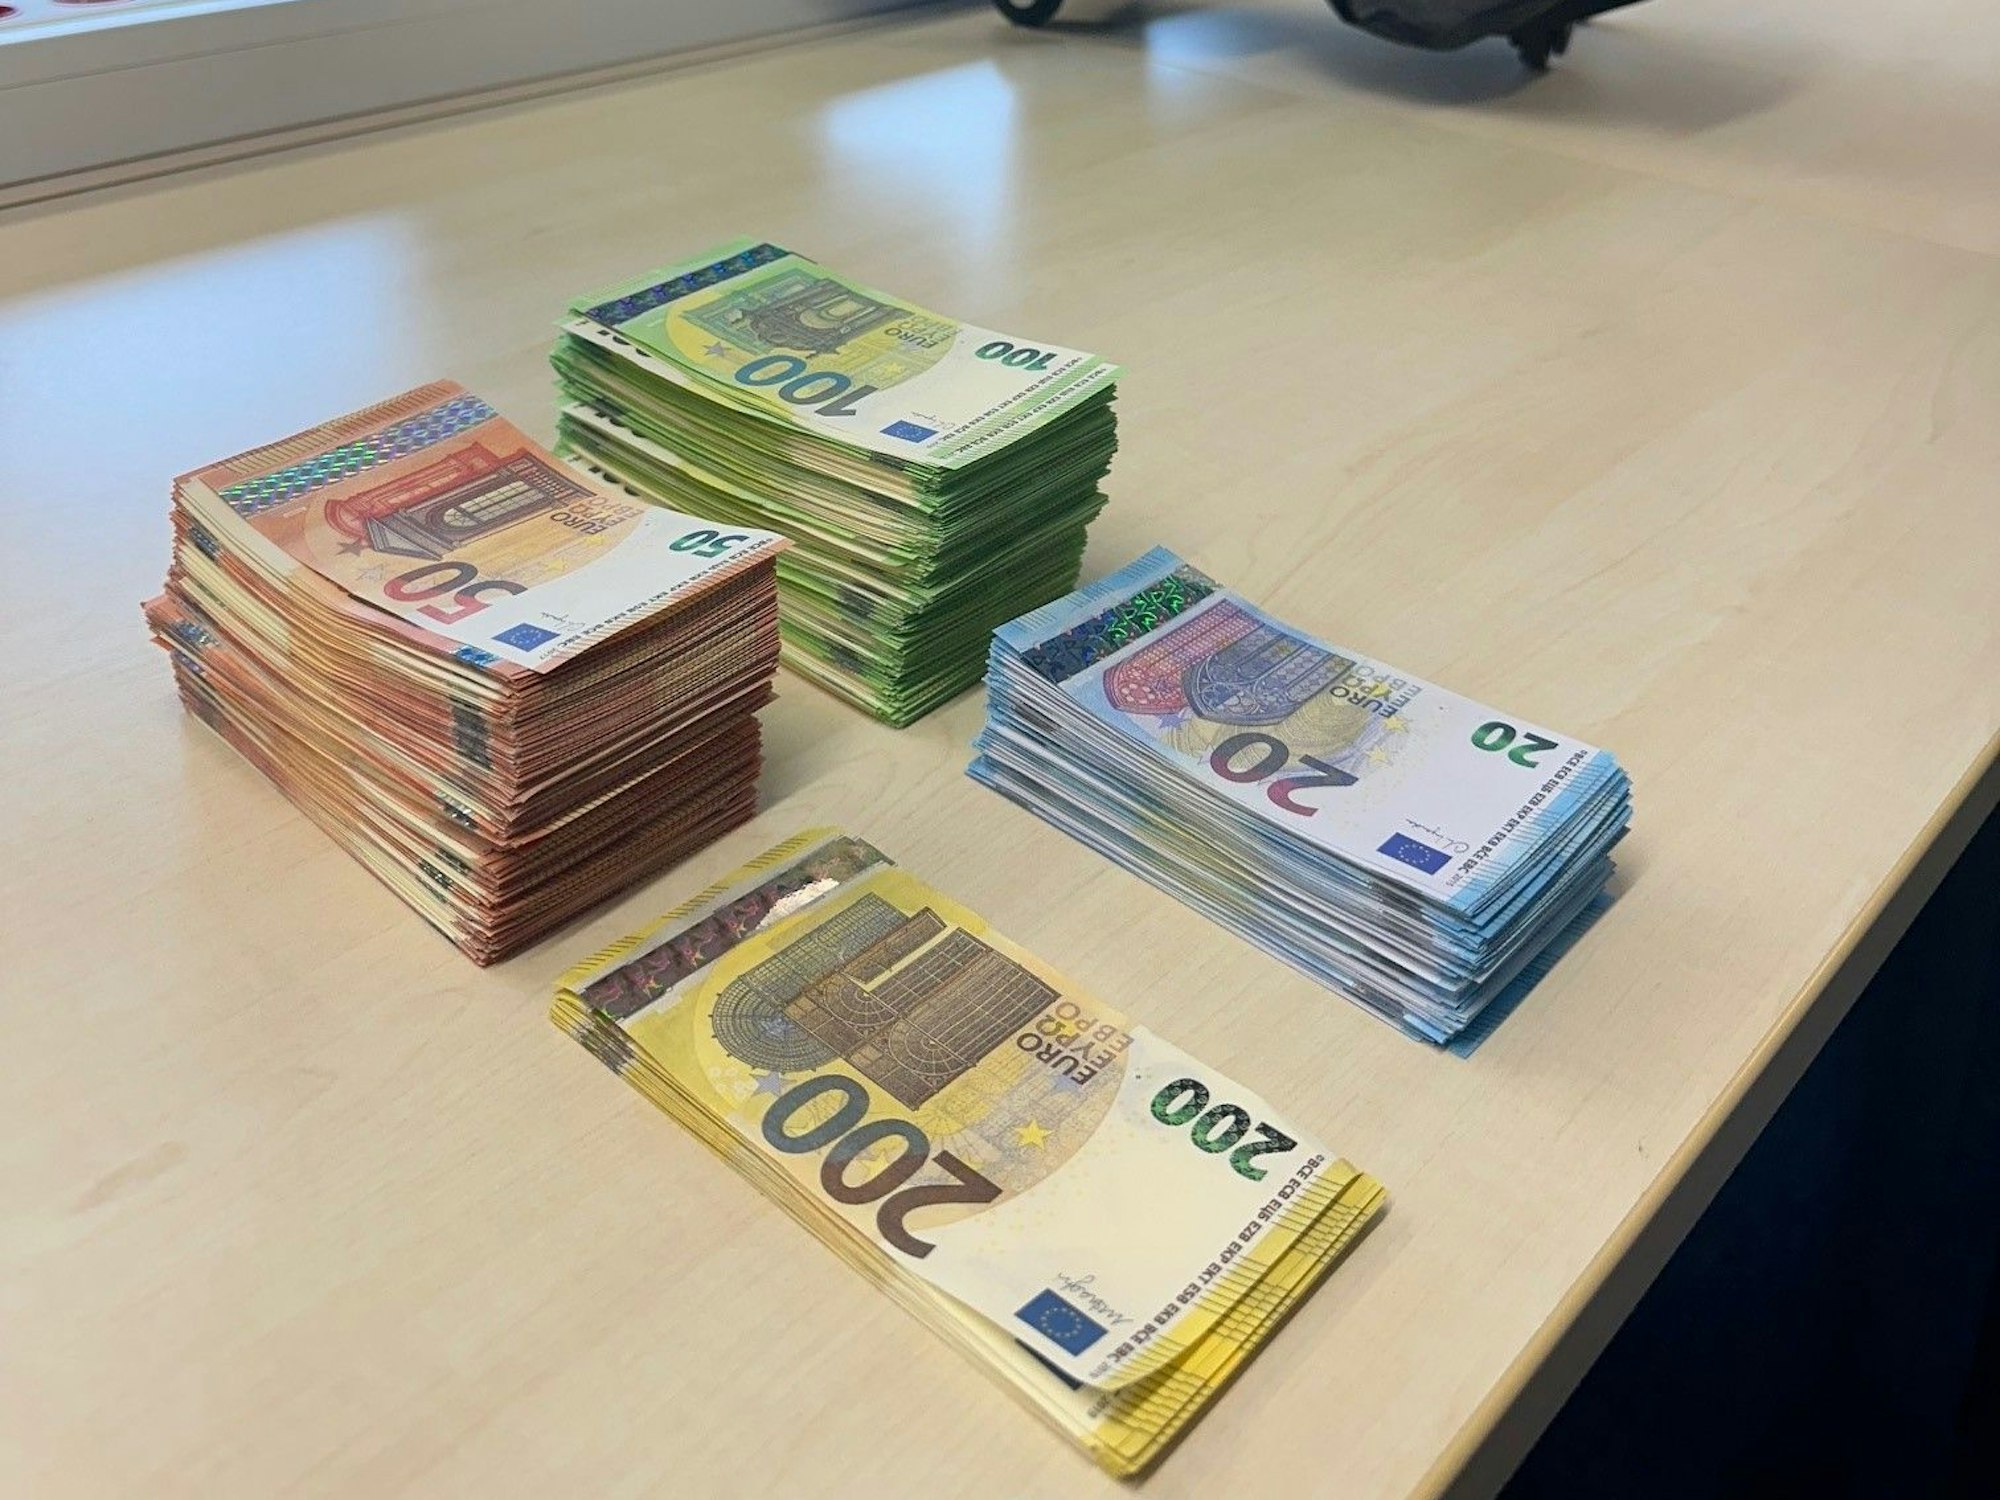 Falsche 200-, 100-, 50- und 20-Euro-Scheine liegen jeweils gestapelt auf einem Tisch.